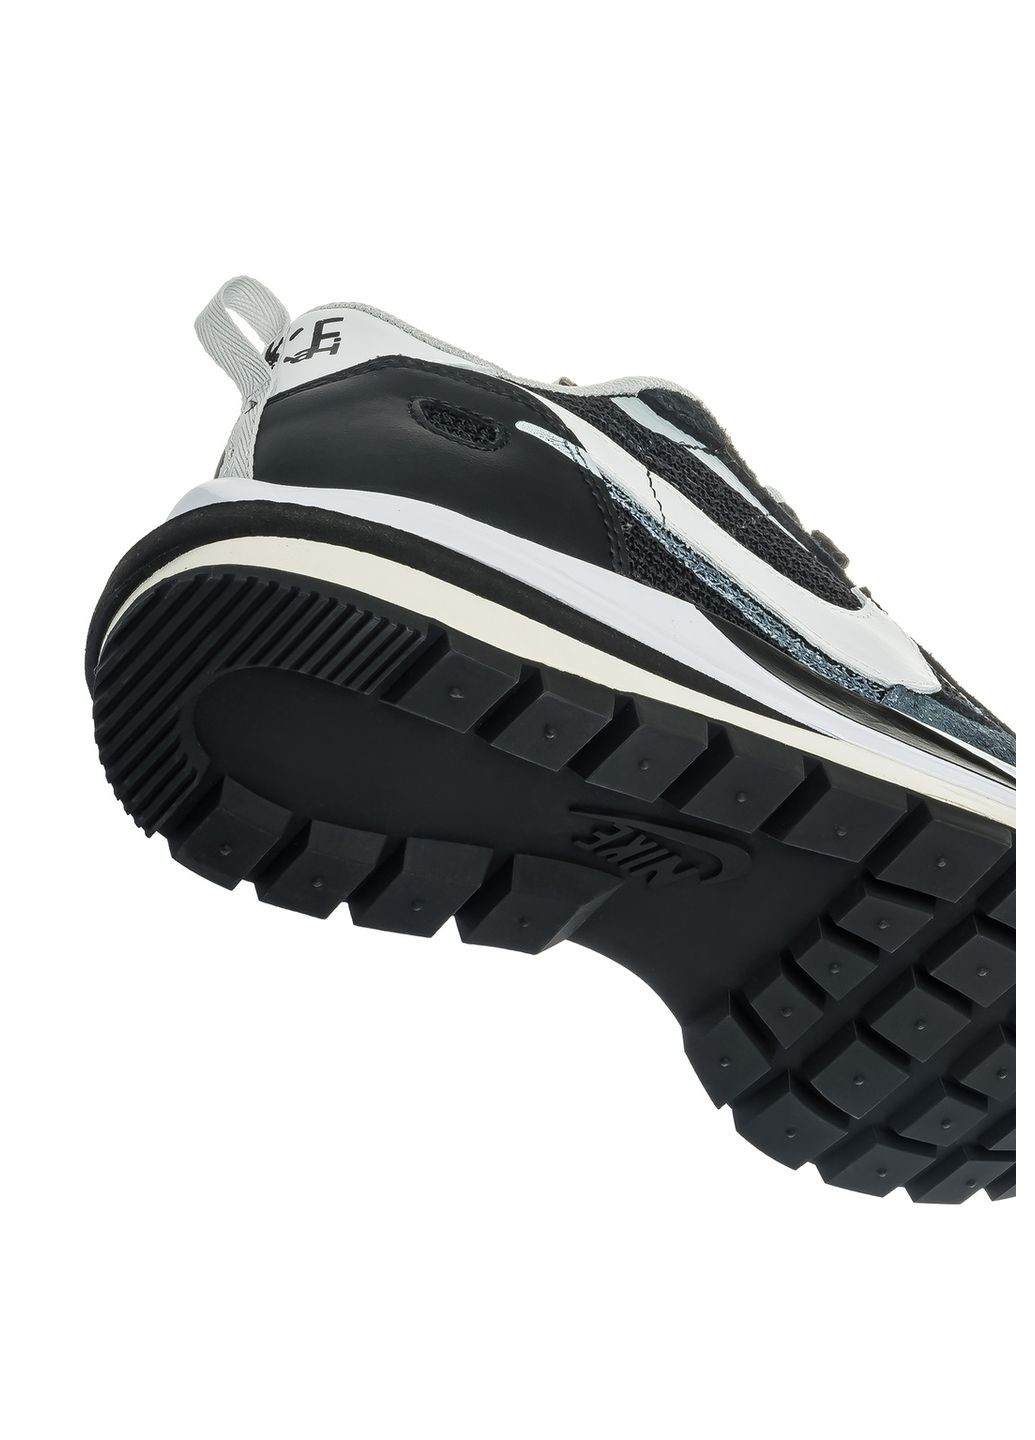 Цветные демисезонные кроссовки мужские black white, вьетнам Nike Vaporwaffle Sacai